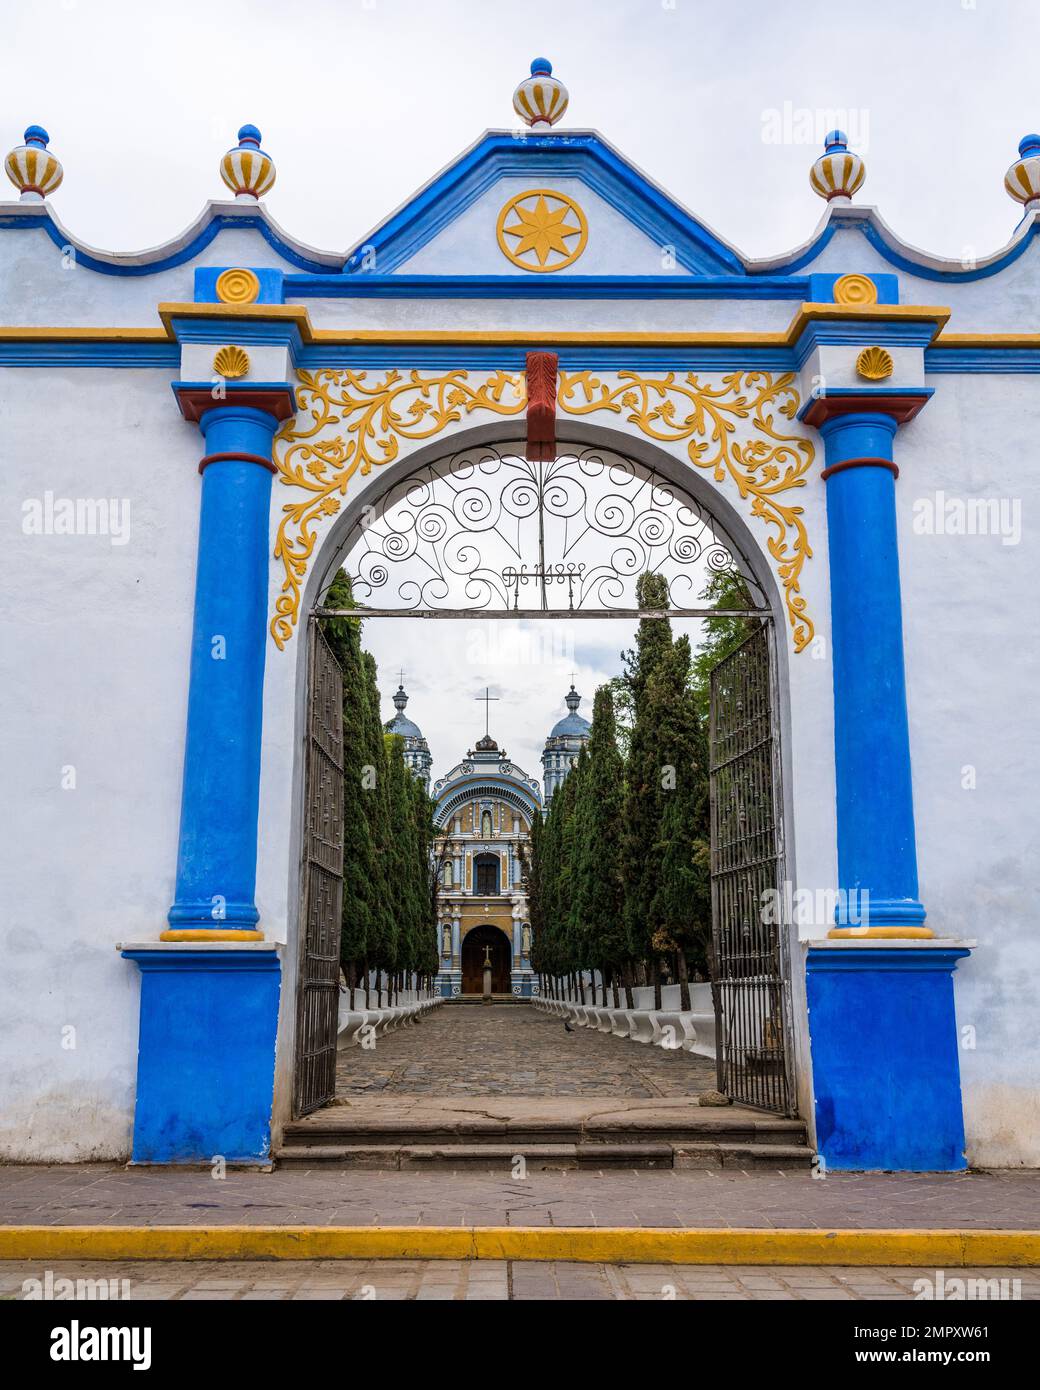 A colorful painted gateway framing the Church of Santo Domingo de Guzman in Ocotlan de Morelos, Oaxaca, Mexico. Stock Photo